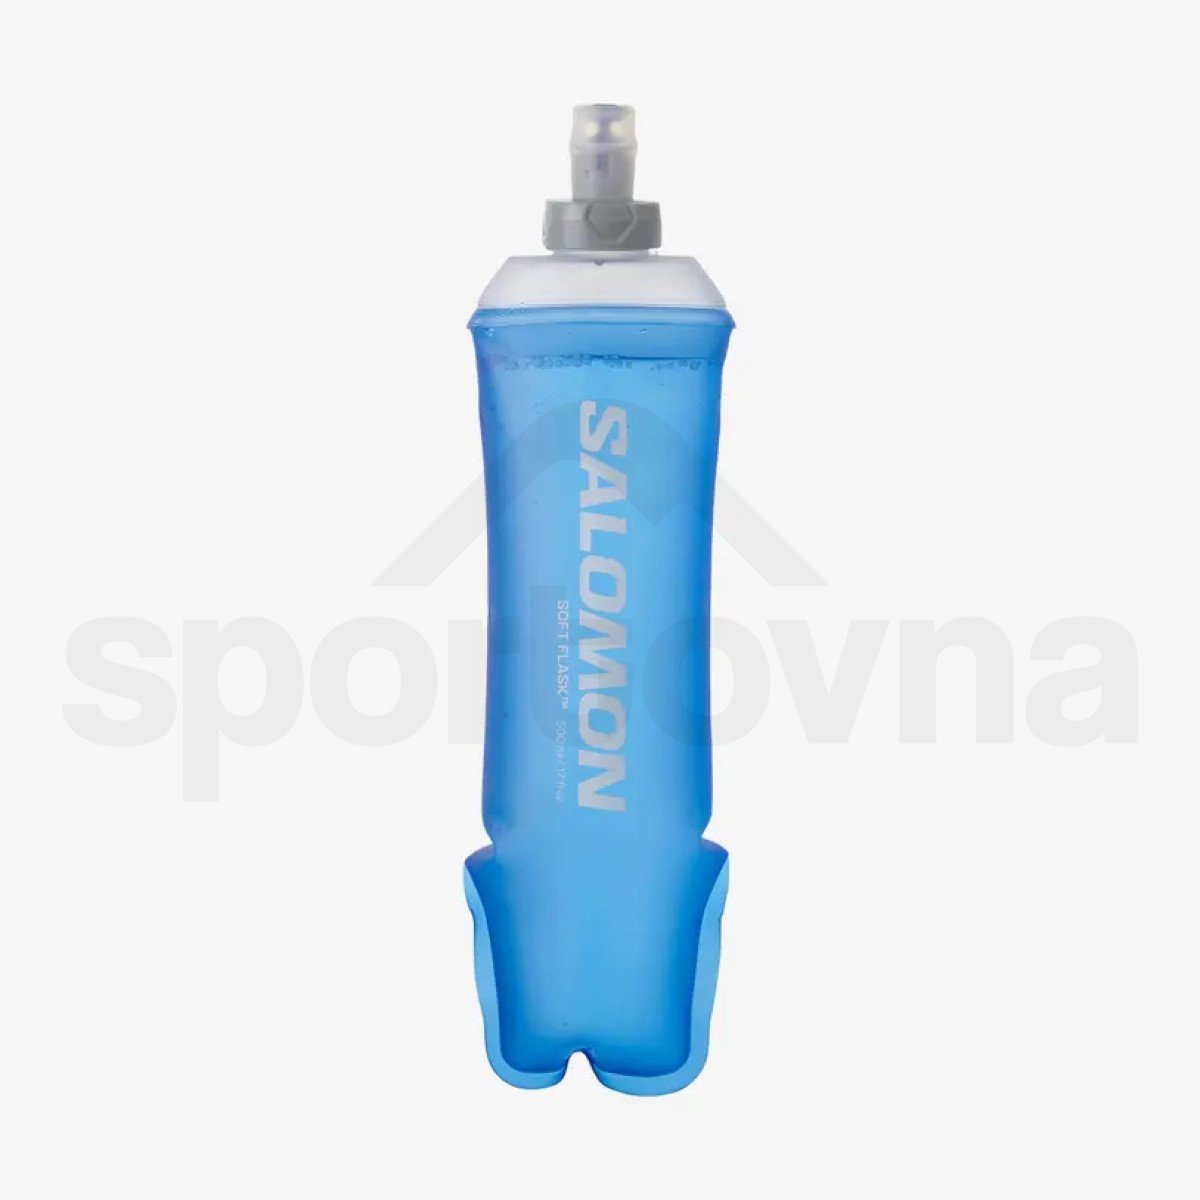 Batoh Salomon Active Skin 8 with flasks - černá